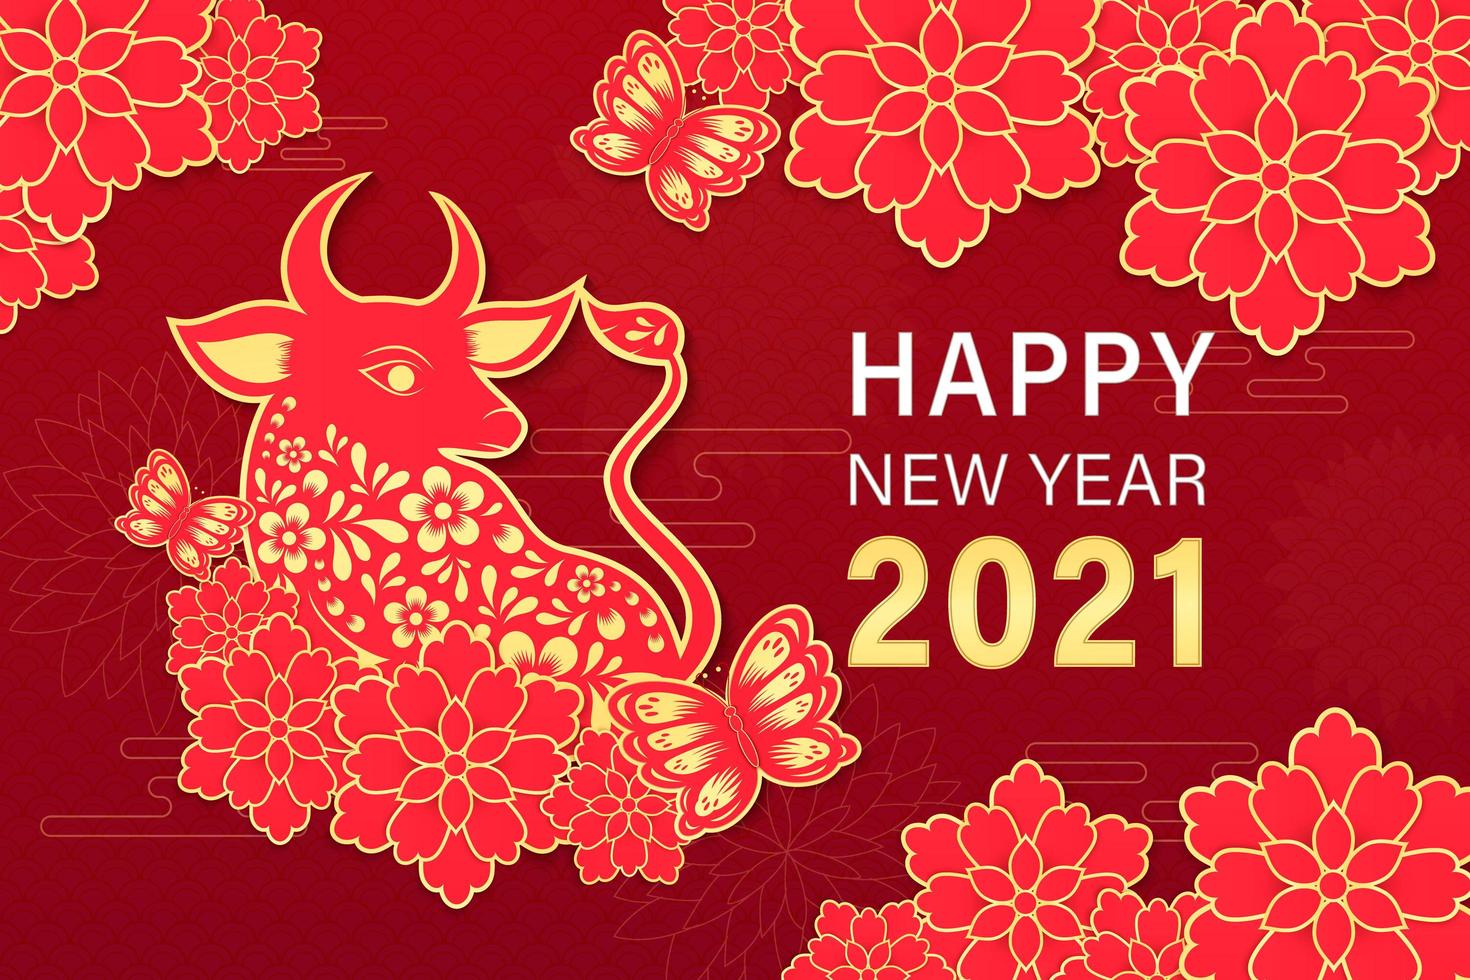 2021 Jaar Van De Chinees Nieuwjaar 2021 Jaar Van De Os 1483233 Download Free Vectors Vector Bestanden Ontwerpen Templates